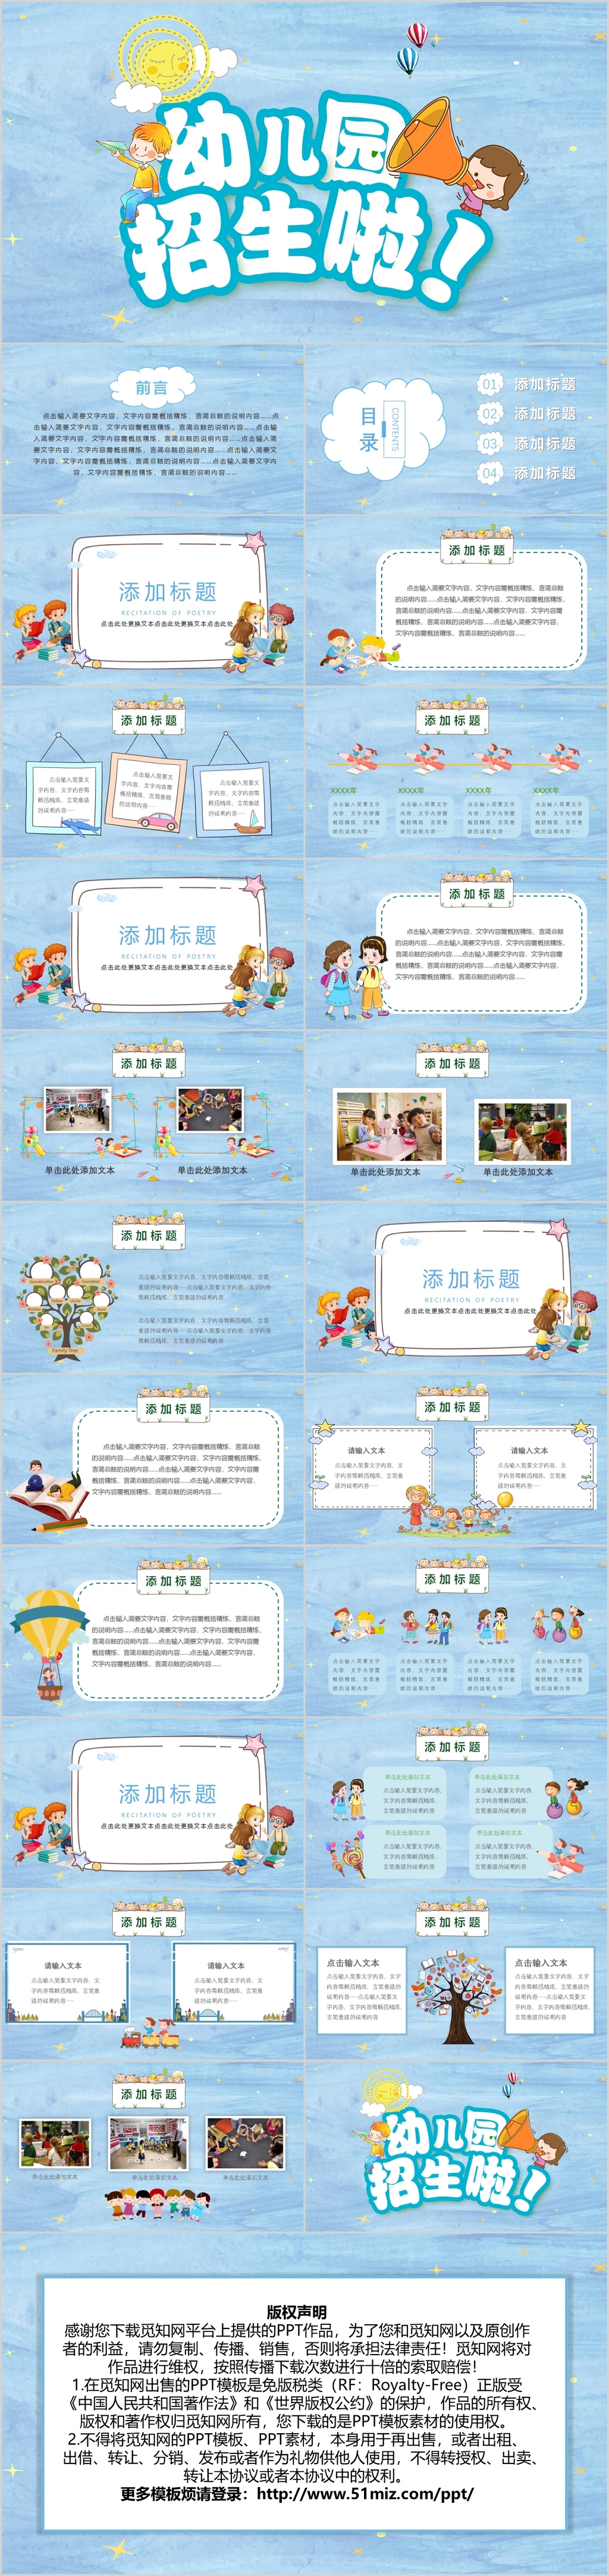 蓝色系卡通幼儿园招生PPT模板宣传PPT动态PPT